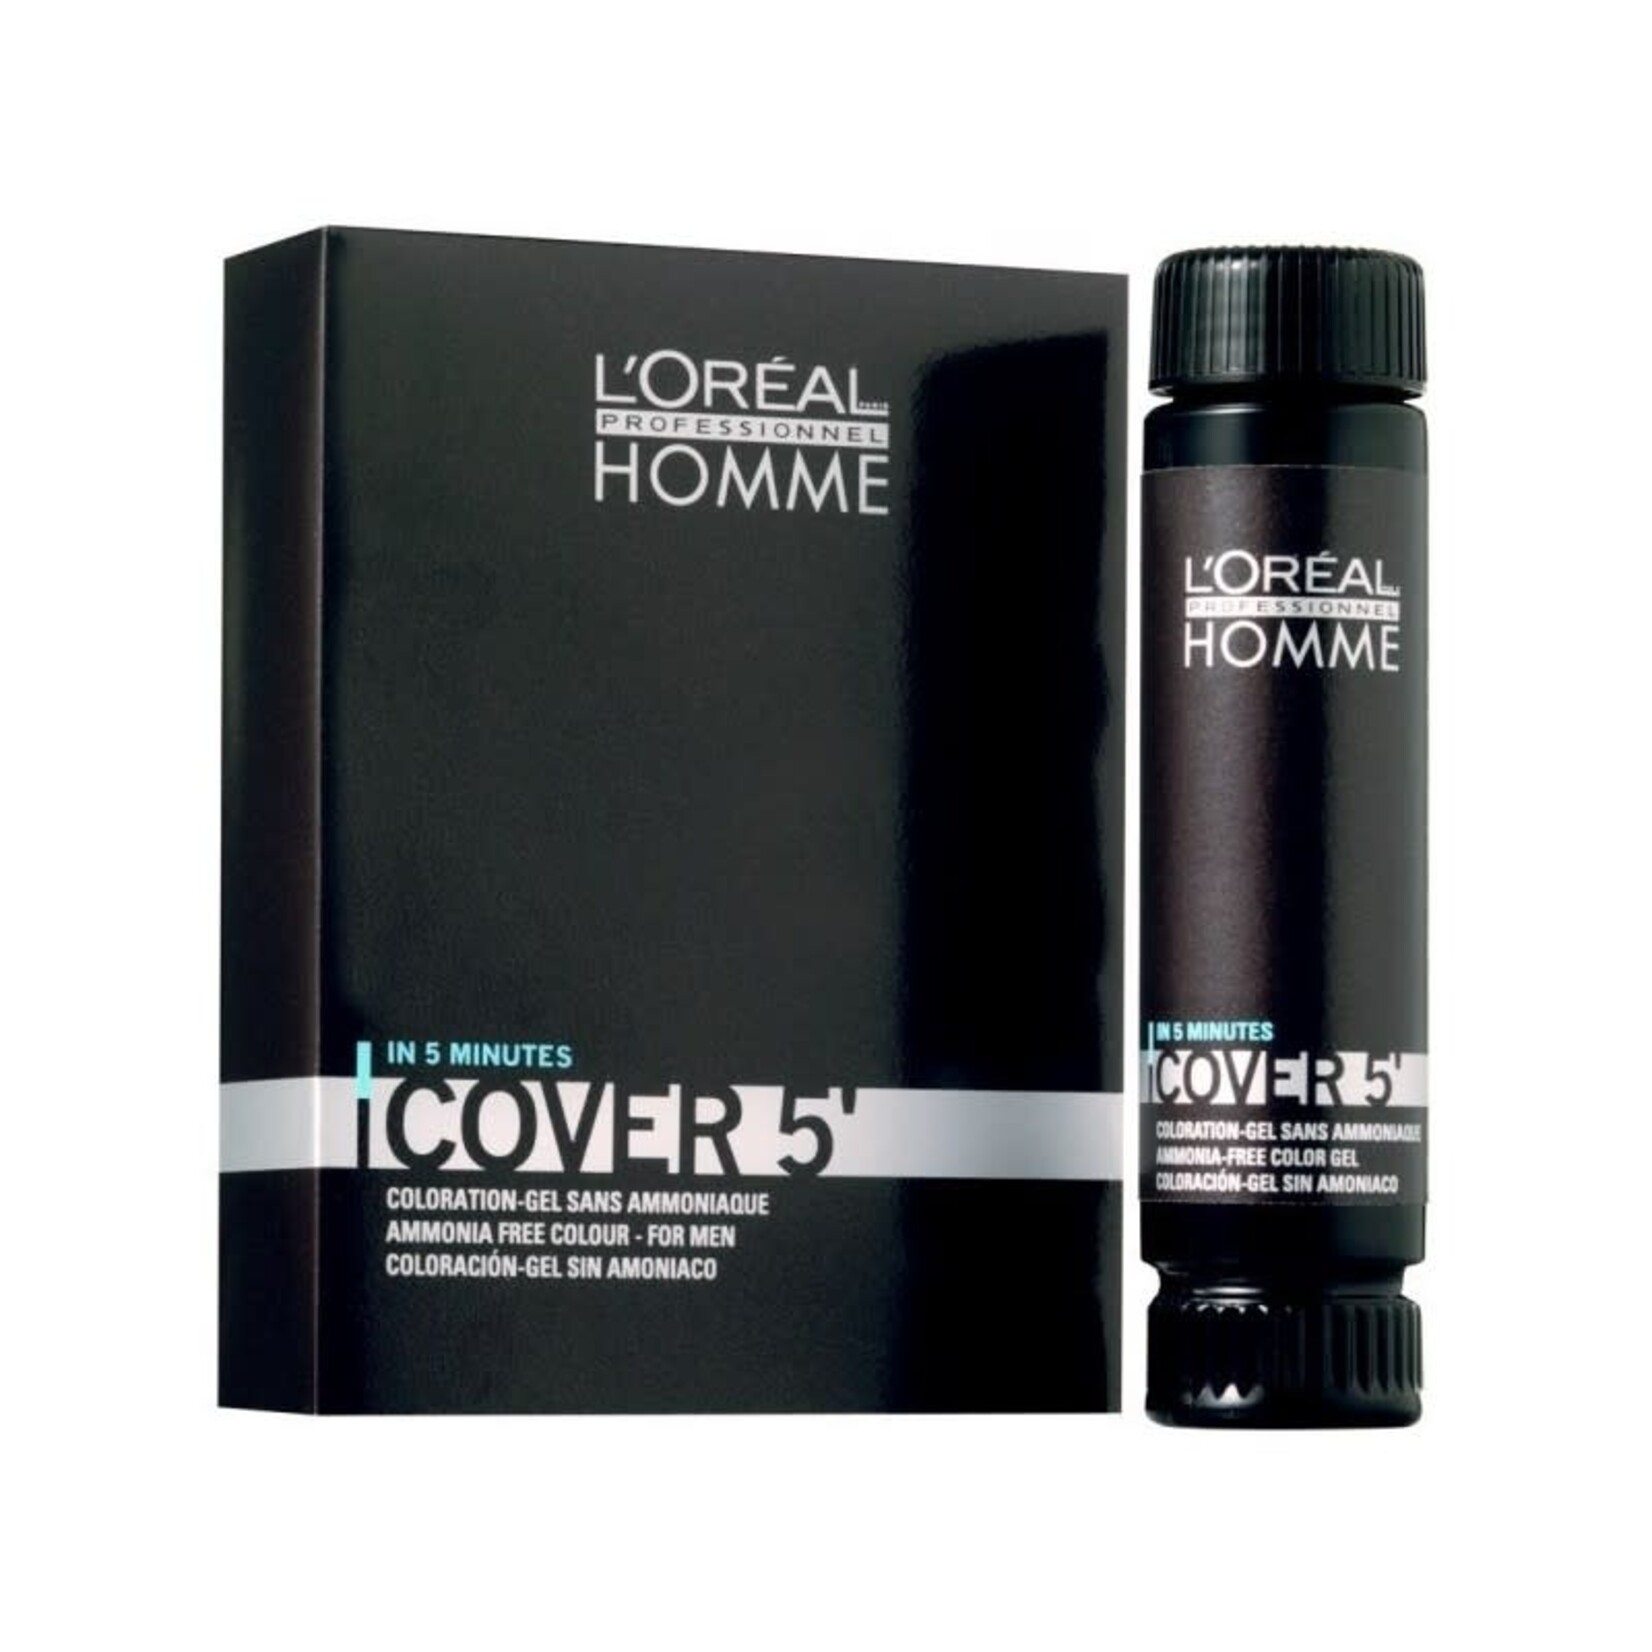 L'Oréal L'Oréal Professionnel - Cover 5 - Coloration Pour Hommes 50ml